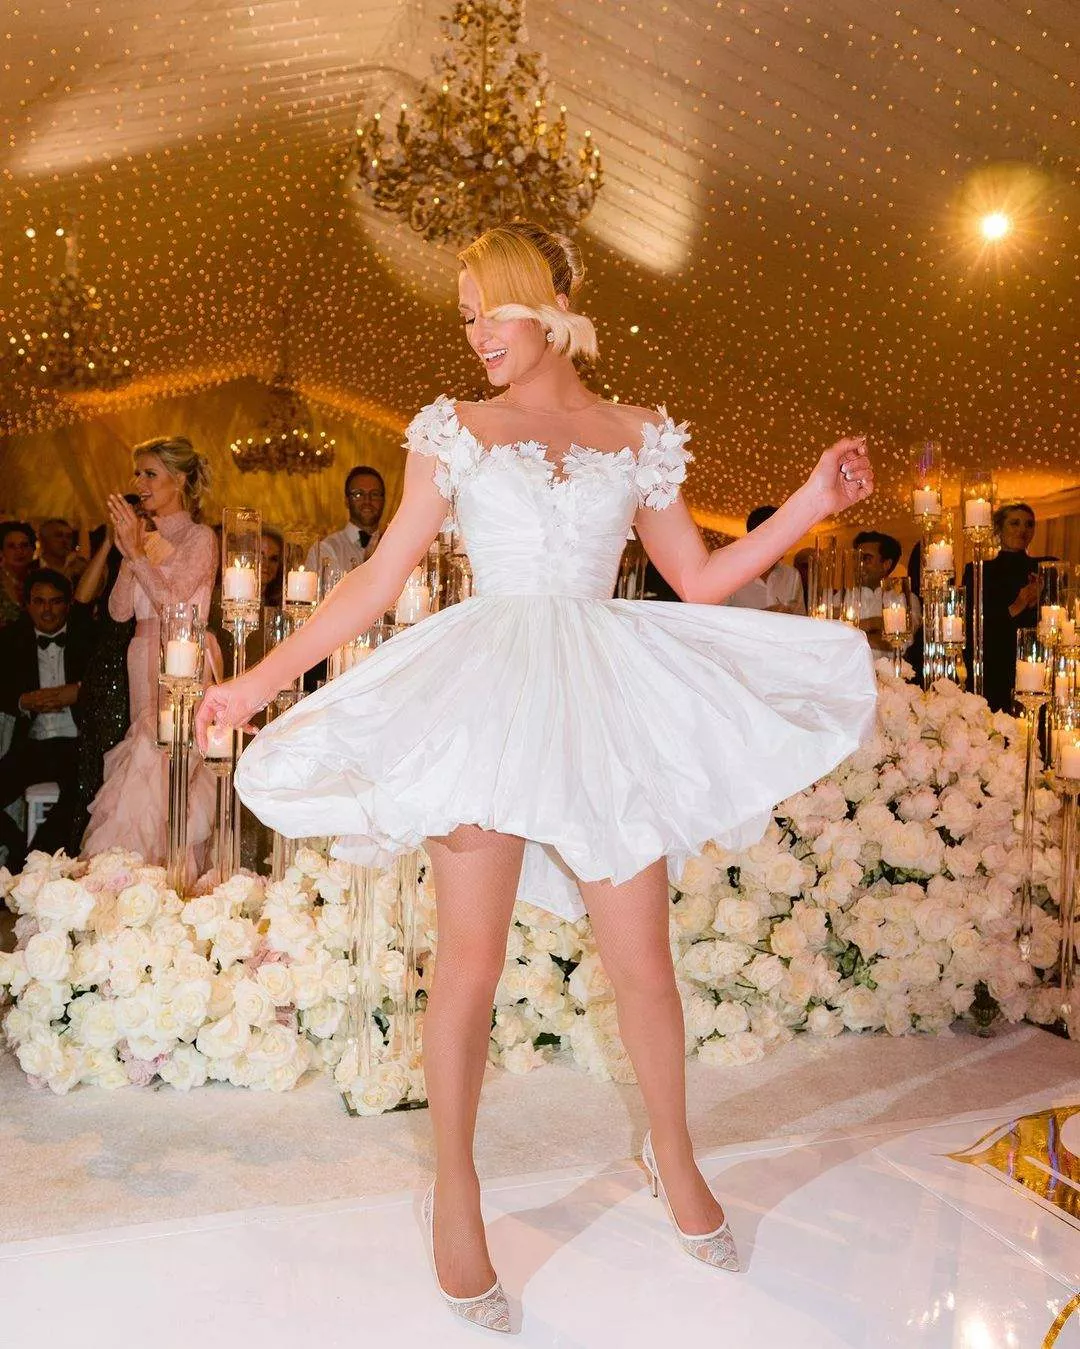 Періс Гілтон на весіллі продемонструвала чотири сукні.